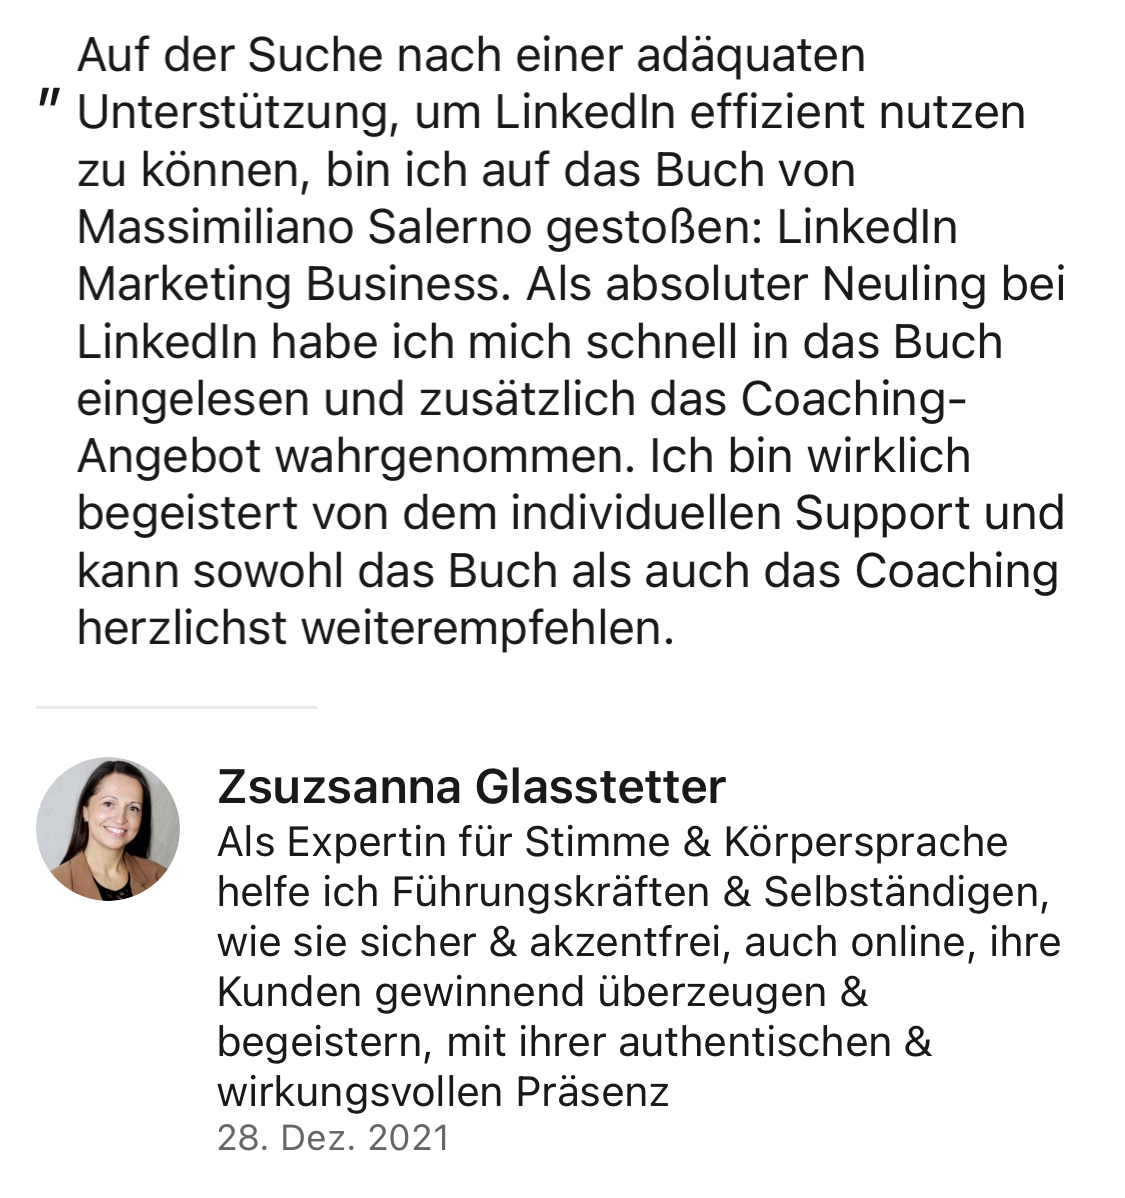 Zsuzsanna Glasstetter Testimonial Buch Linkedin Marketing Businessx von Massimiliano Salerno